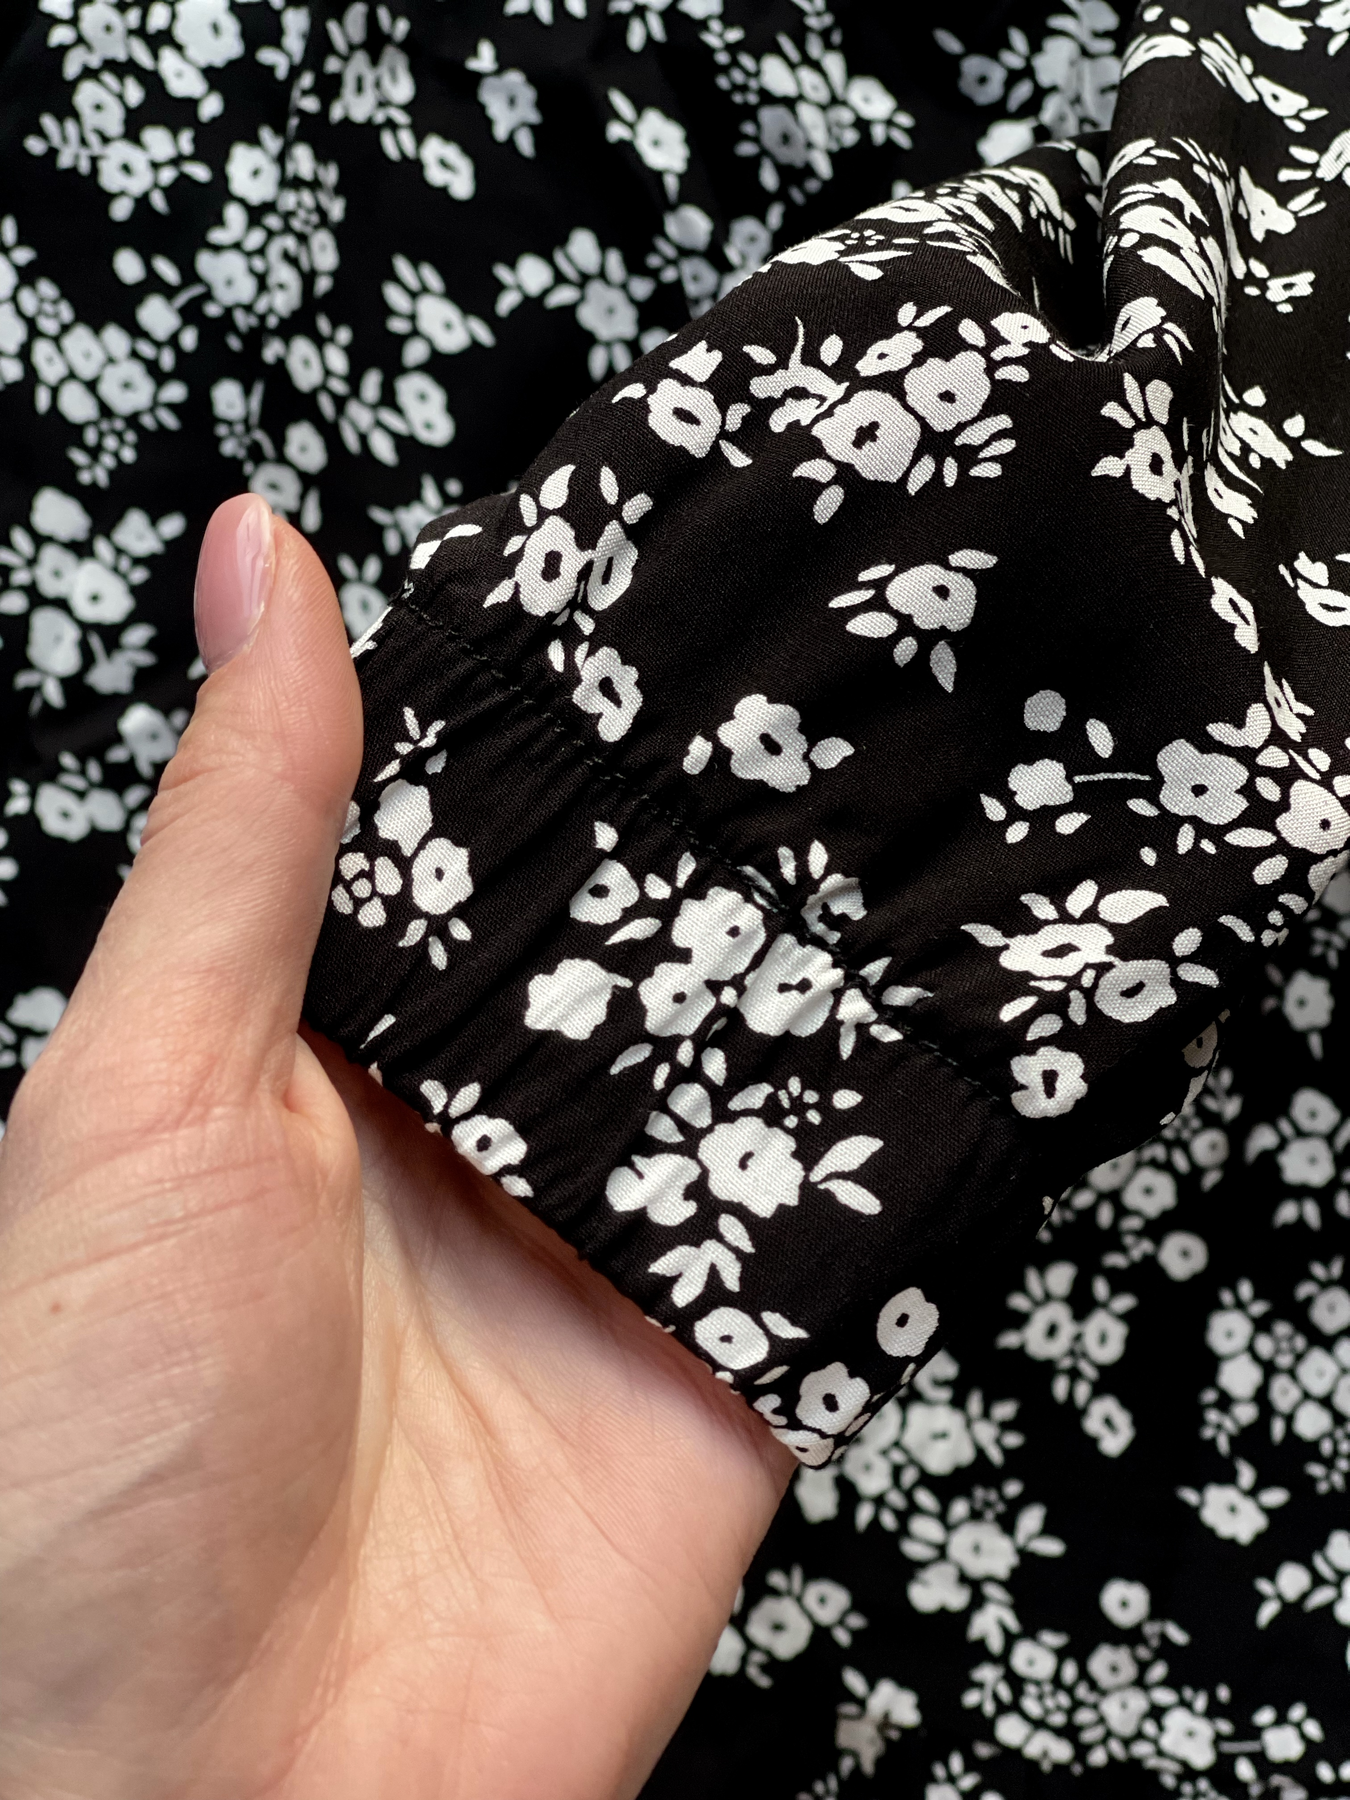 Купить Длинное платье в цветочек черное с длинным рукавом Merlini Фори 700001202, размер 42-44 (S-M) в интернет-магазине